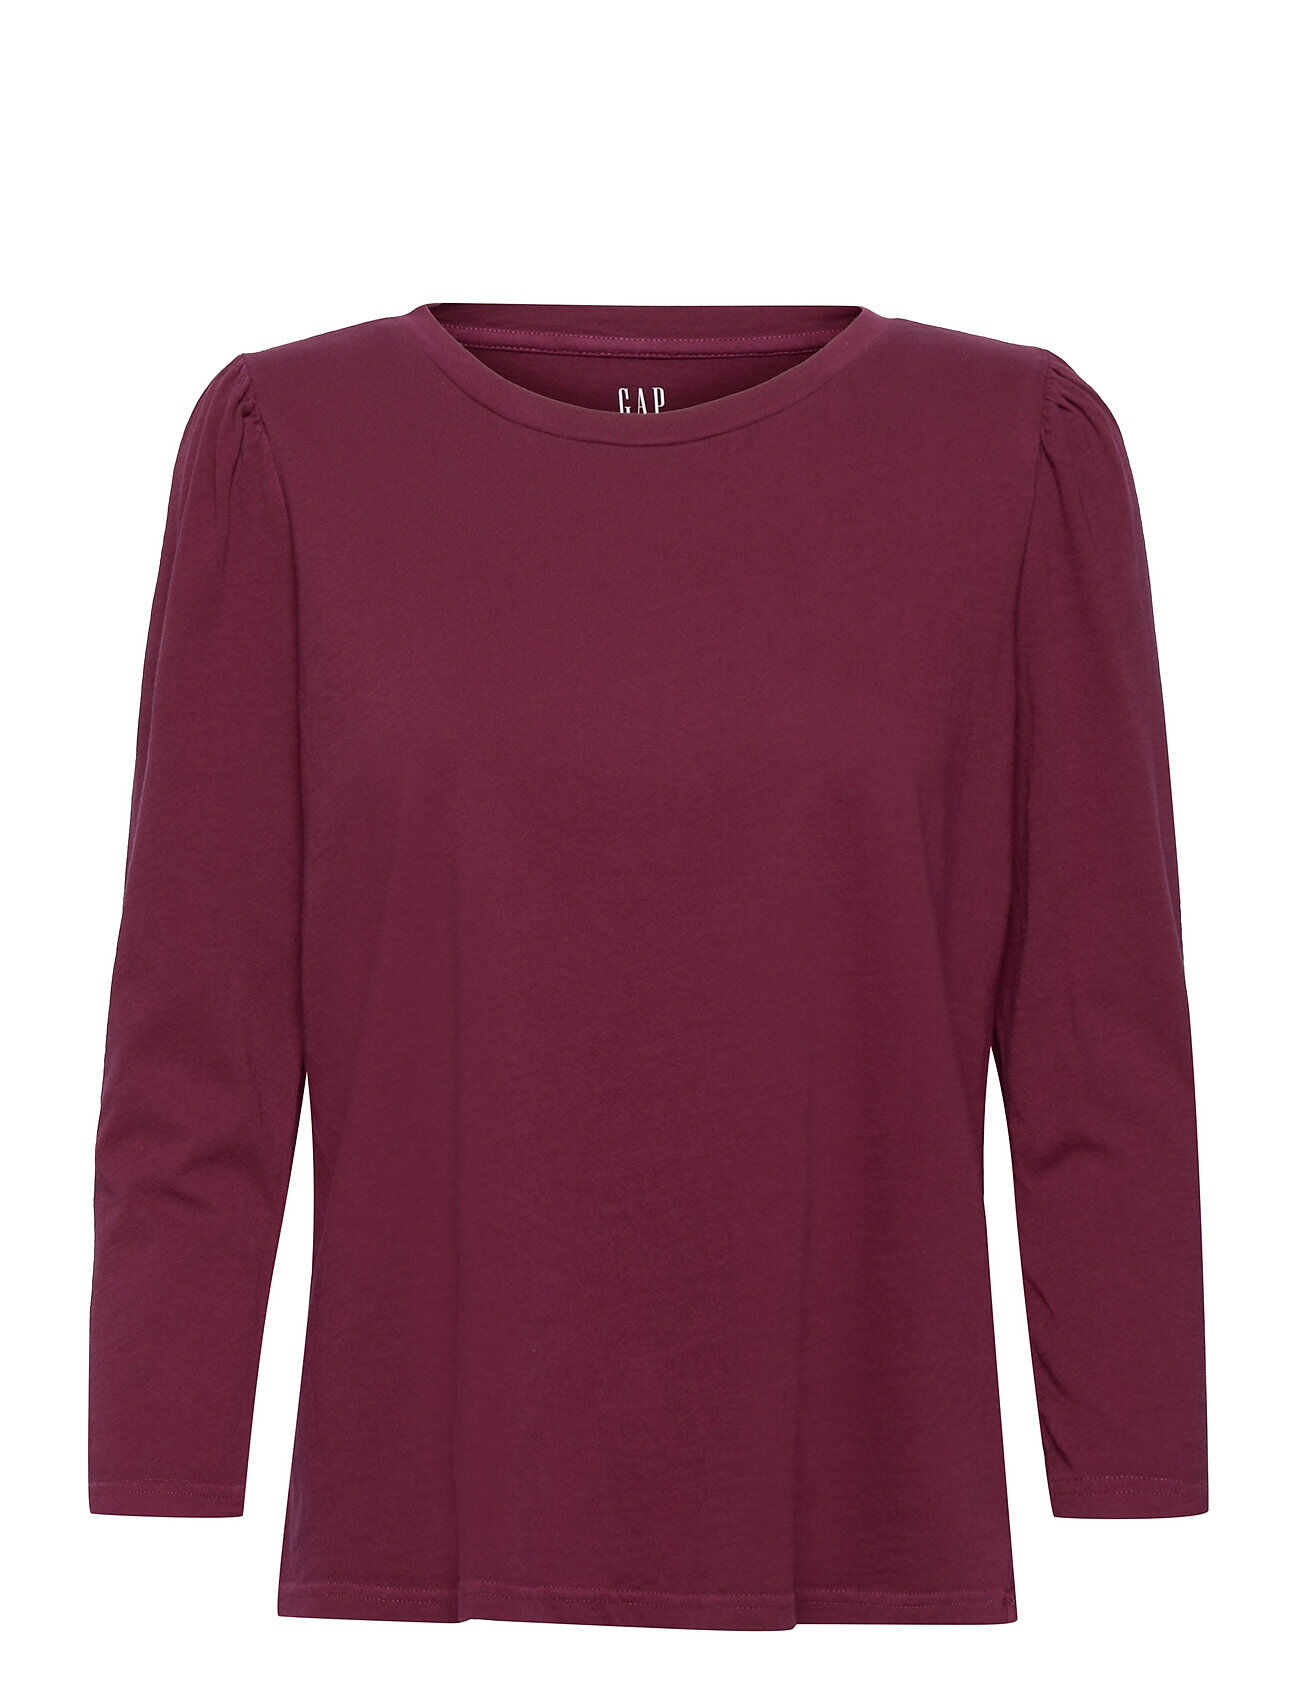 GAP 100% Organic Cotton Puff Sleeve T-Shirt T-shirts & Tops Long-sleeved Rød GAP